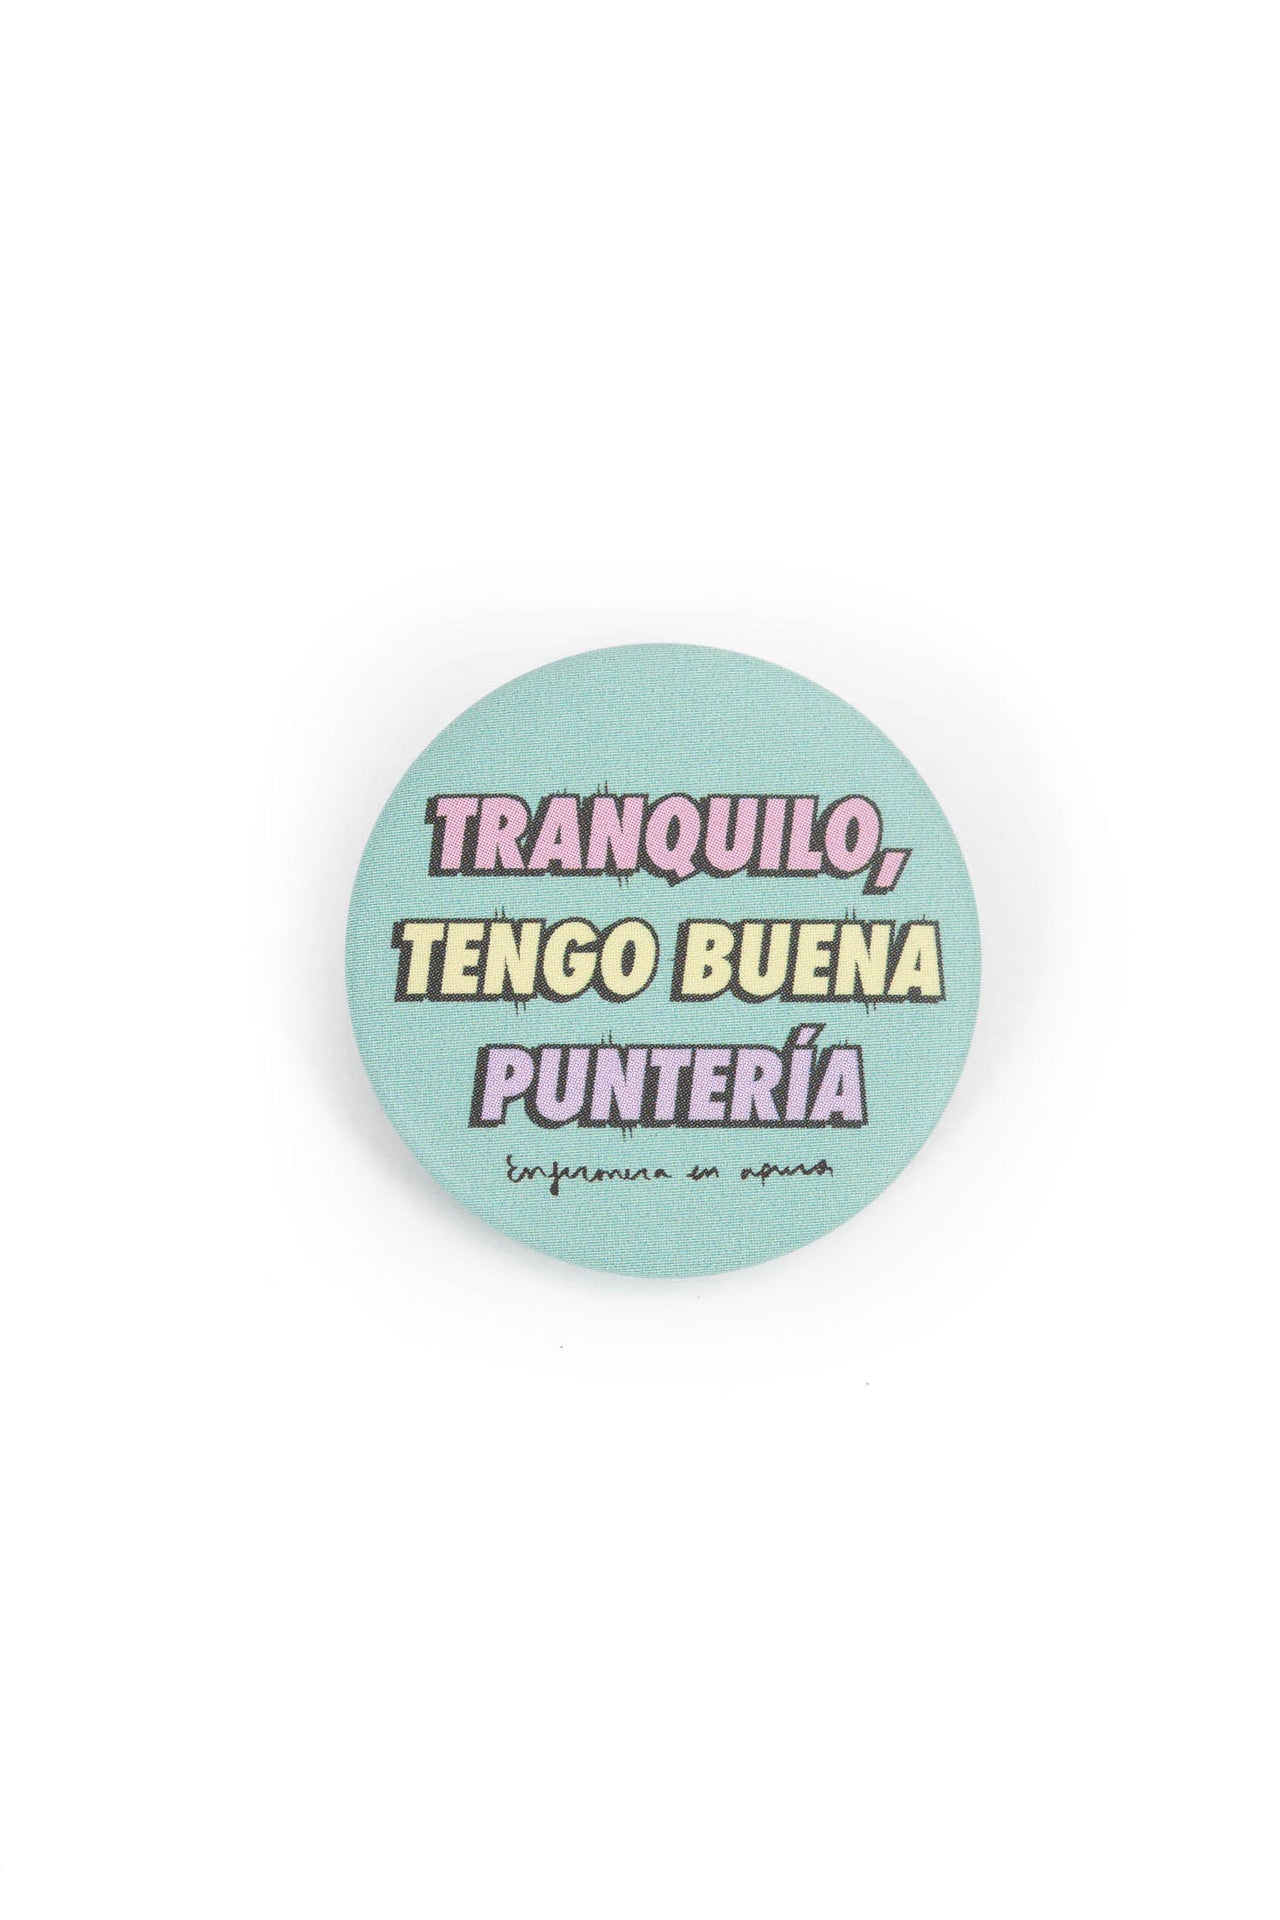 Badge "Tranquilo, tengo buena puntería" (Keep calm, I have good aim)